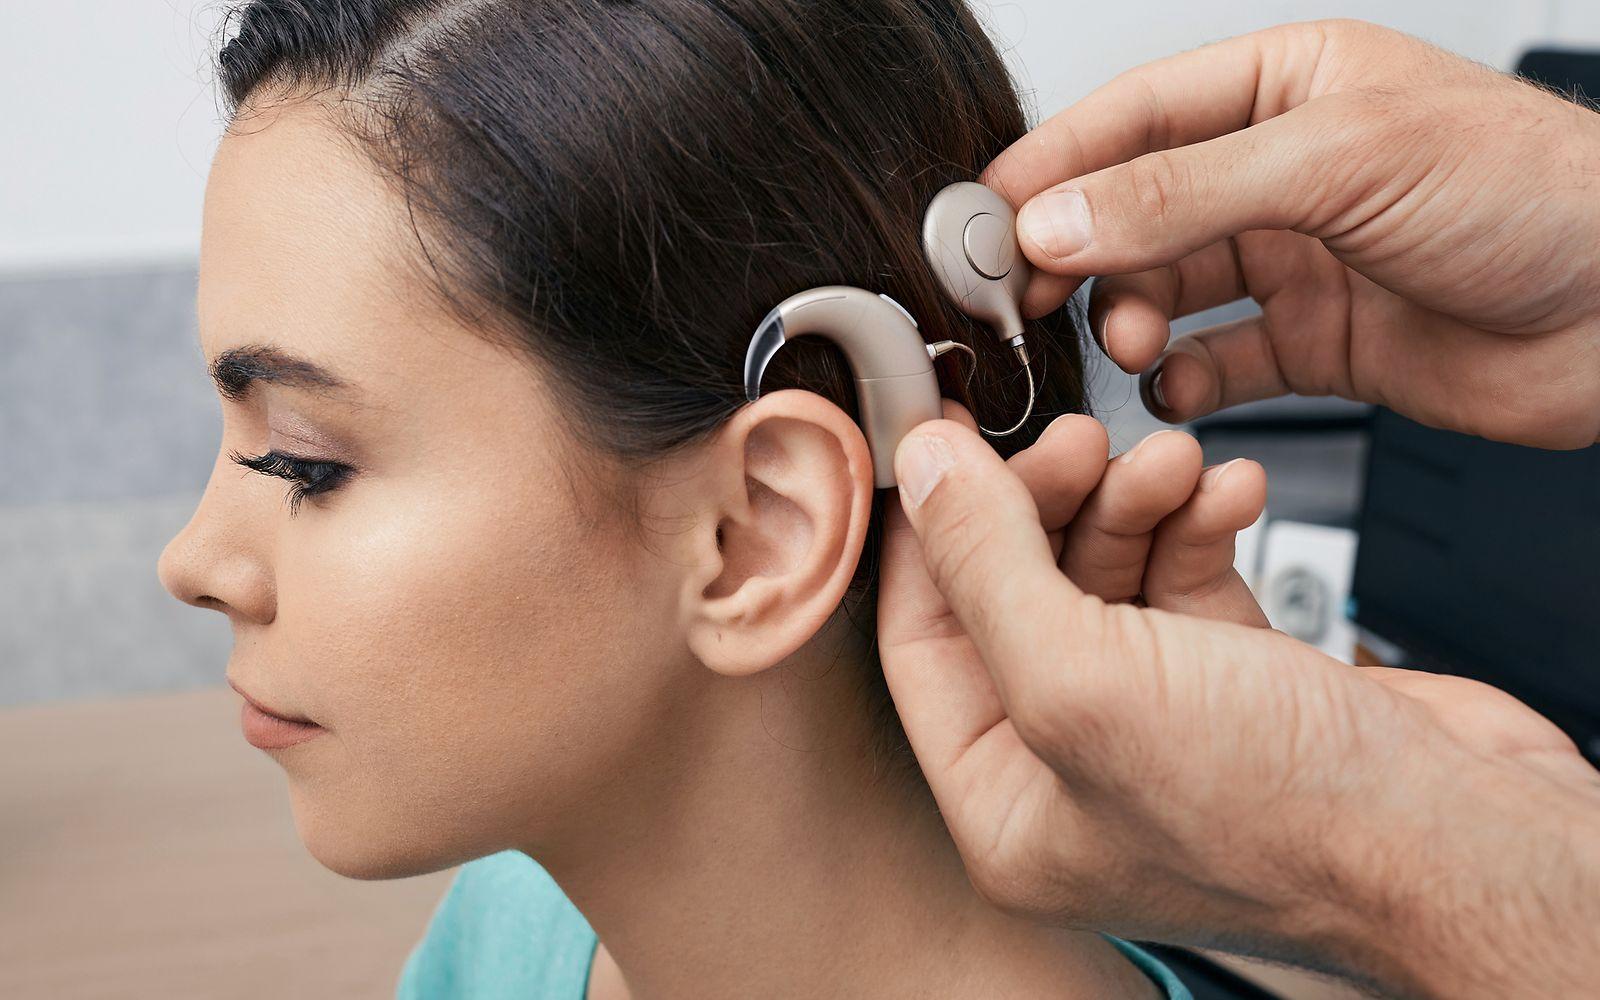 Abbildung einer jungen Frau, der das Cochlea Implantat am Ohr angebracht wird.